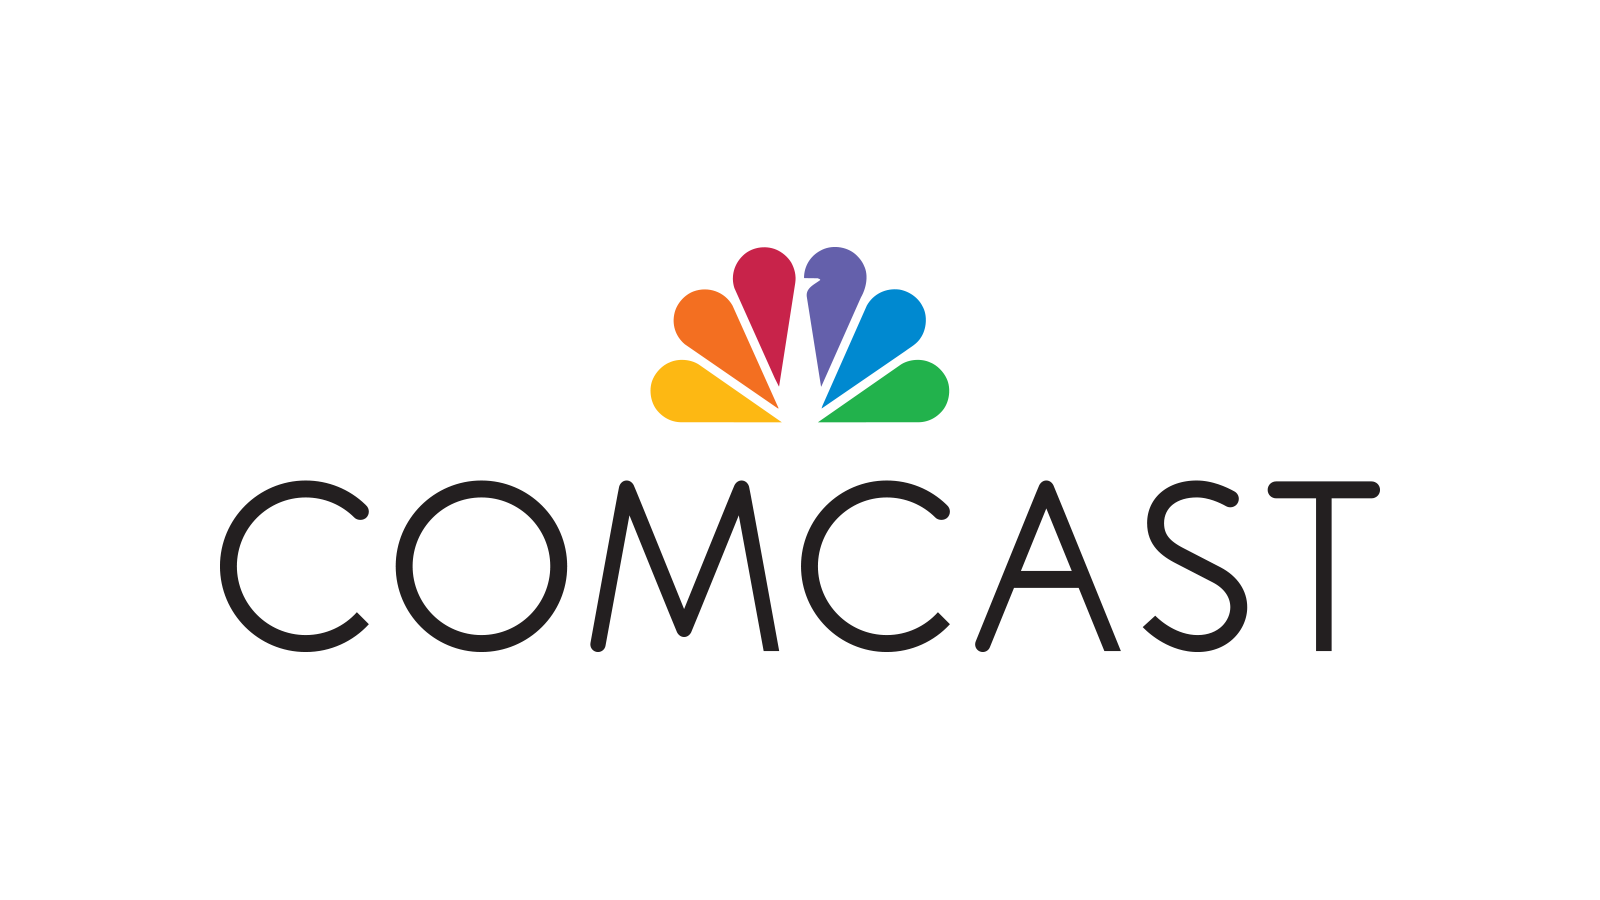 corporate_Official-Comcast-Logo